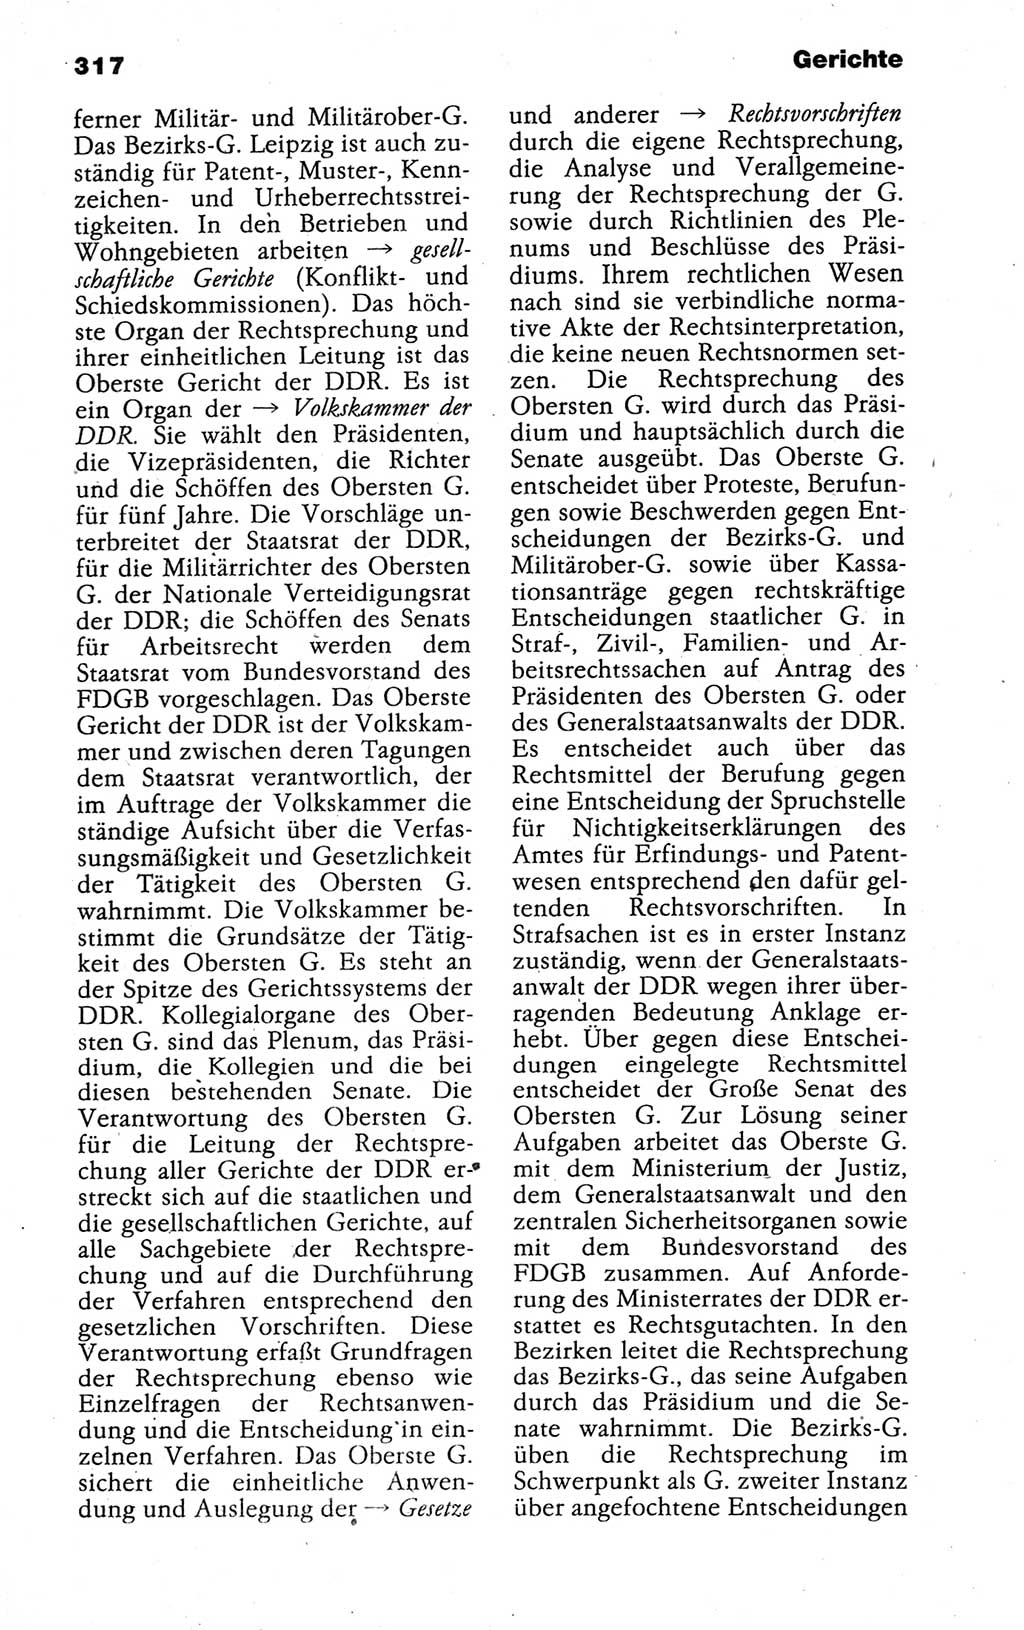 Kleines politisches Wörterbuch [Deutsche Demokratische Republik (DDR)] 1988, Seite 317 (Kl. pol. Wb. DDR 1988, S. 317)